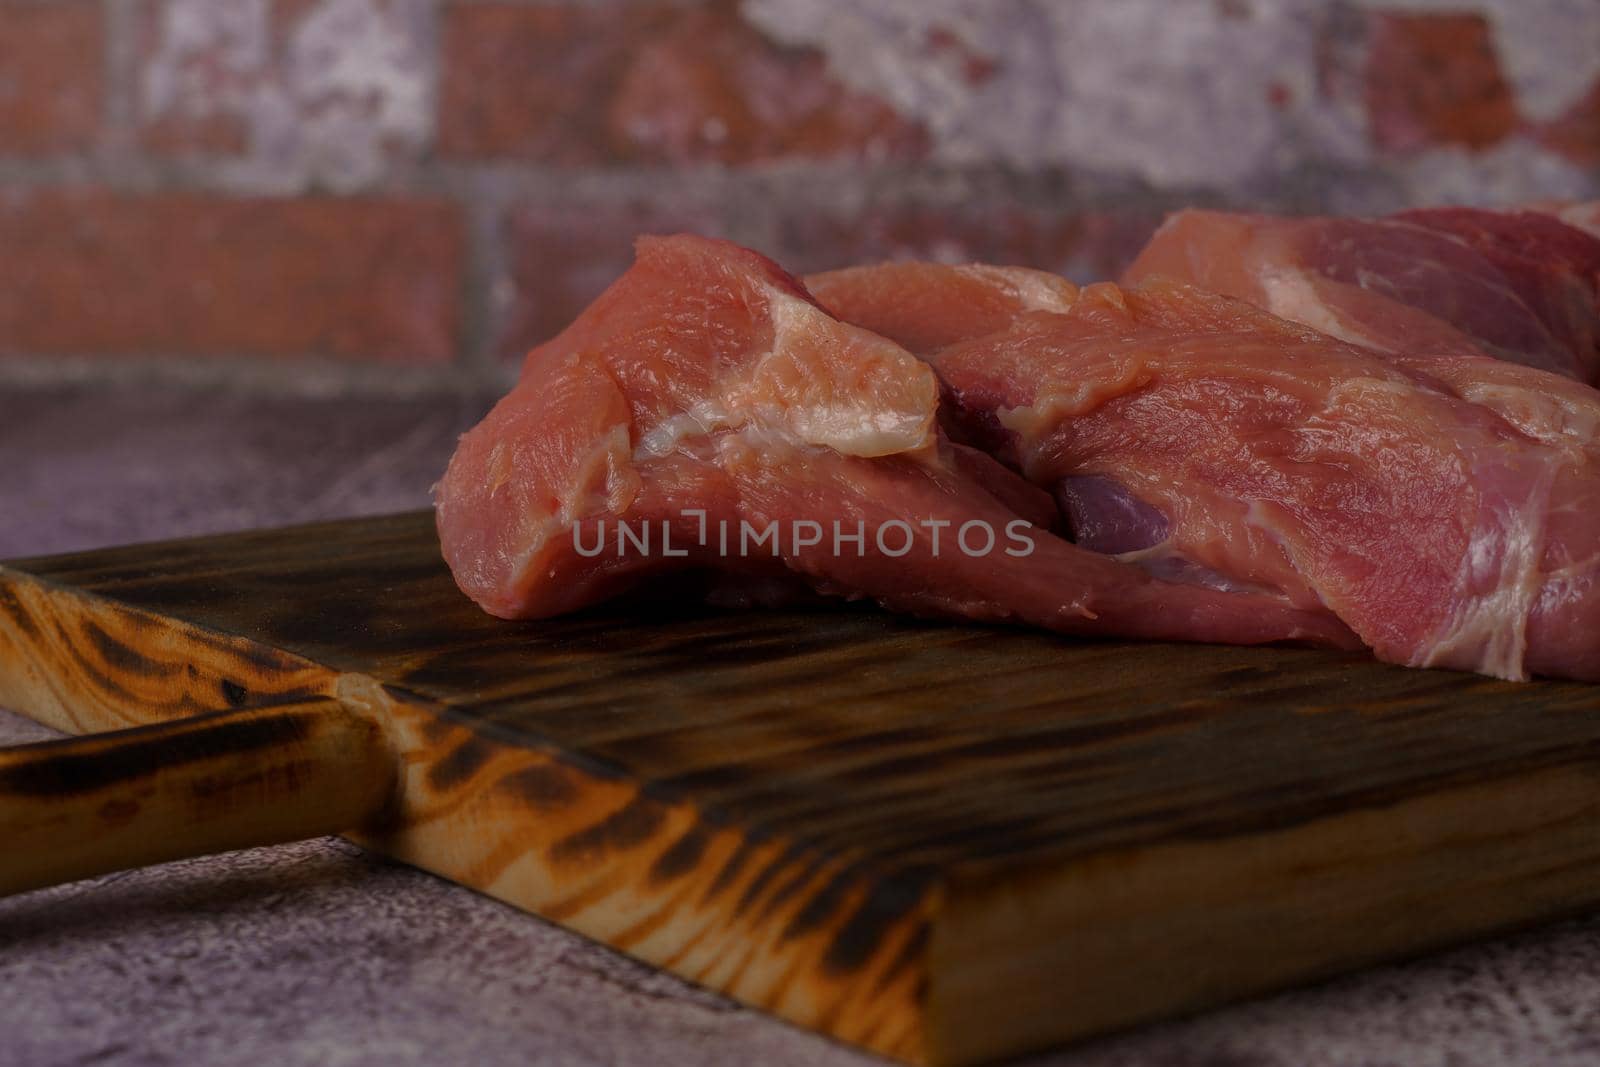 filleted raw pork tenderloin on a wooden board by joseantona